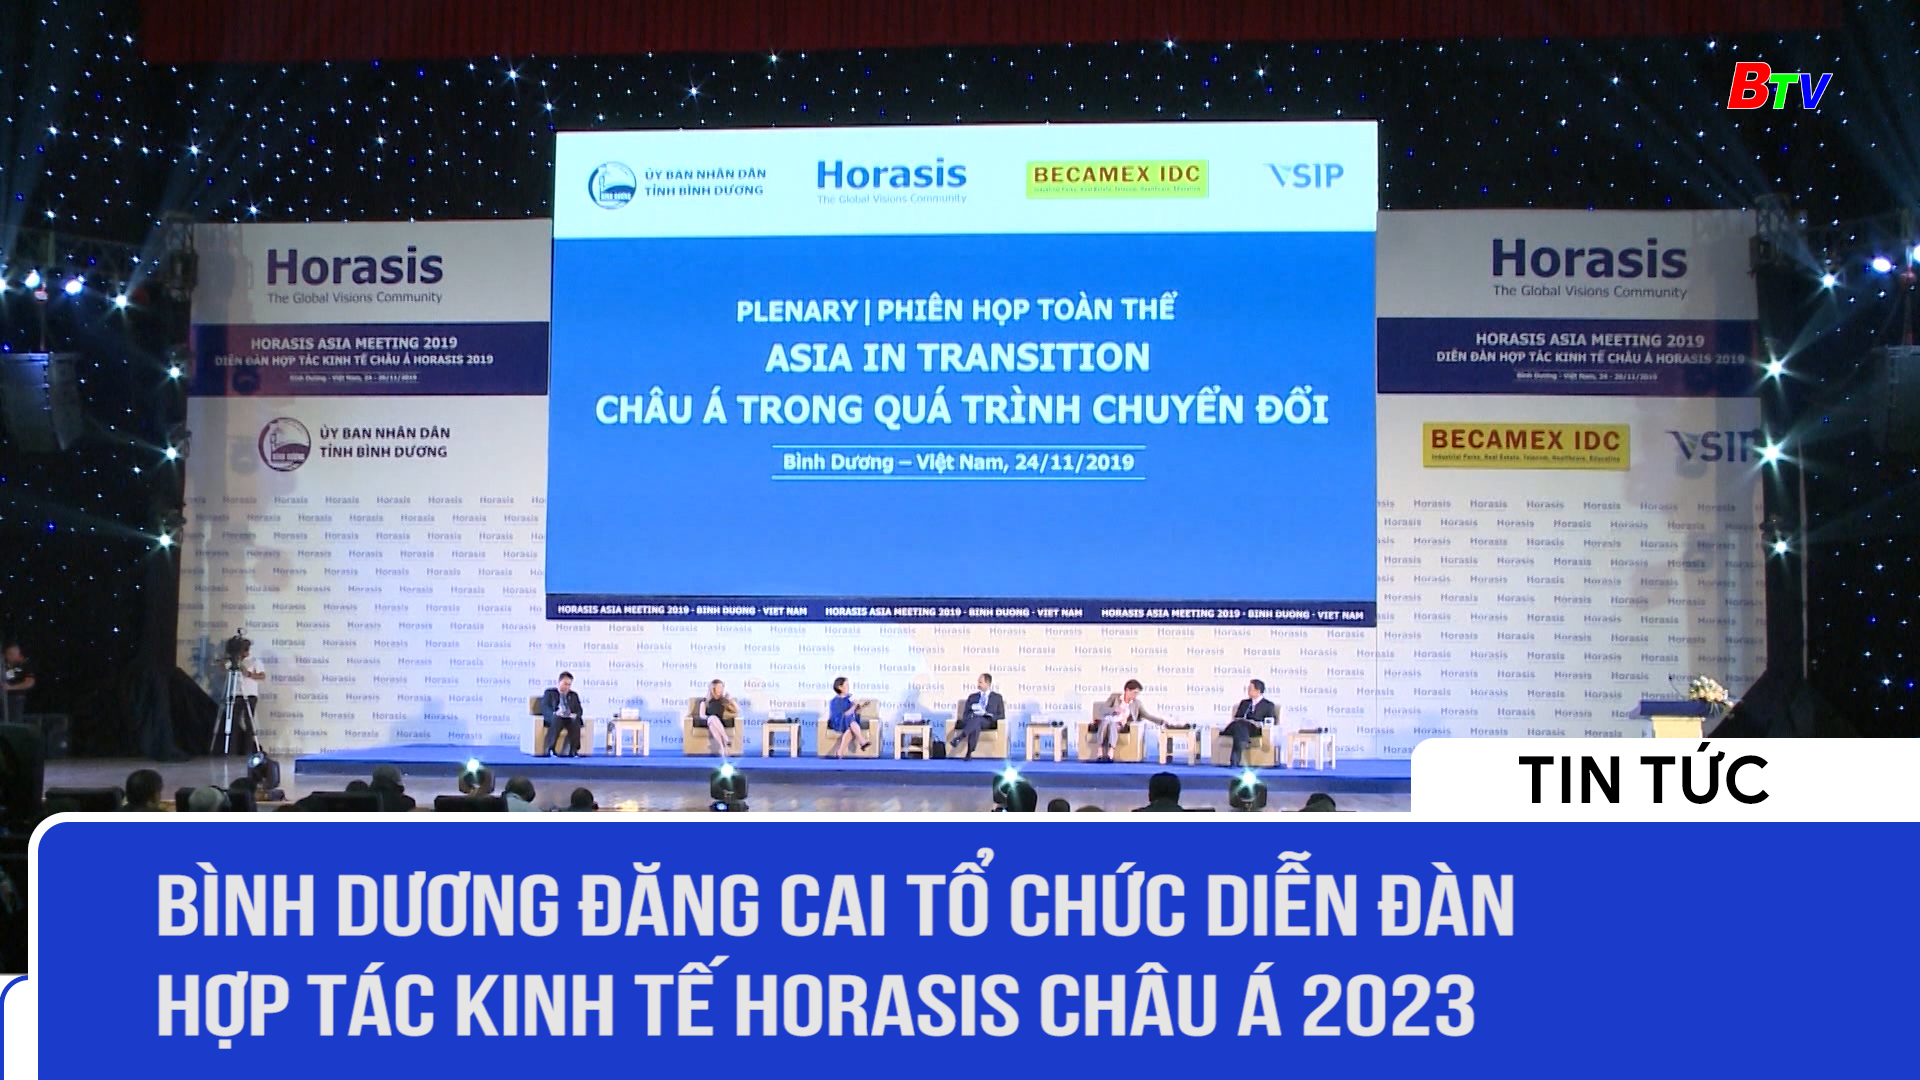 Diễn đàn Hợp tác kinh tế Horasis Châu Á 2023 diễn ra tại Bình Dương